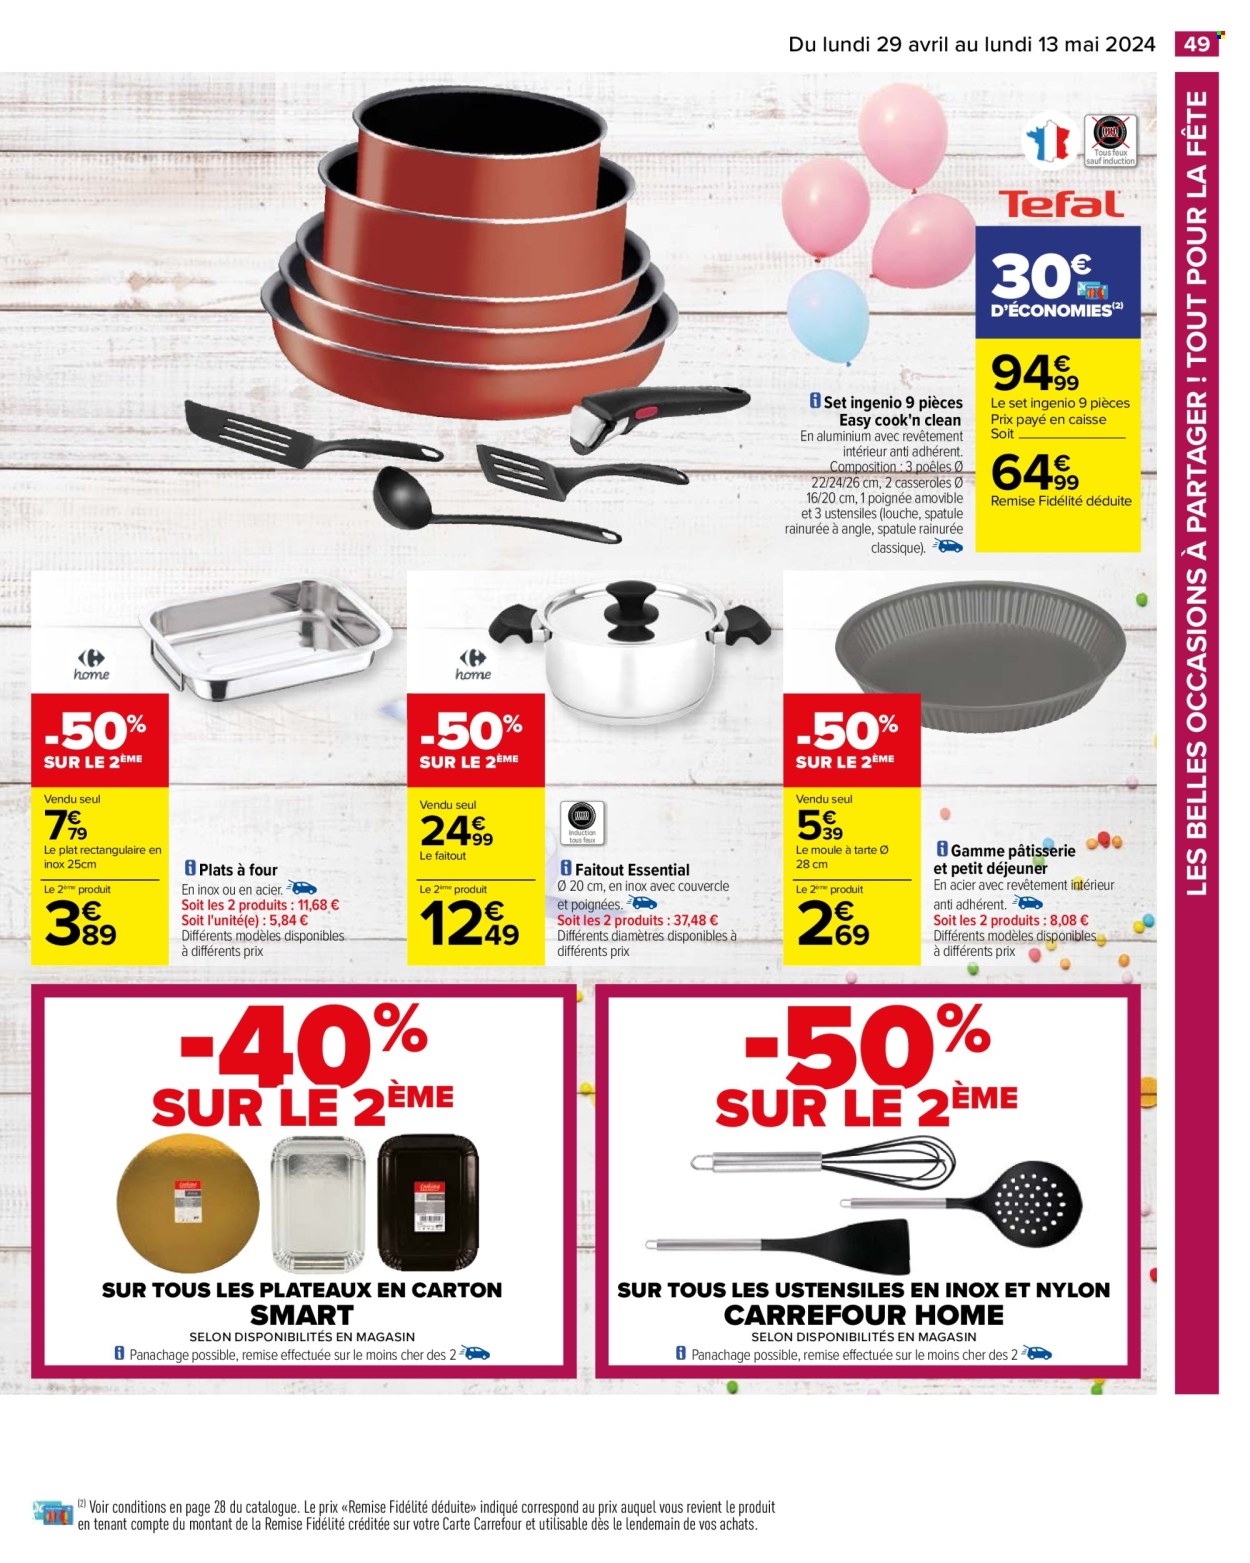 thumbnail - Catalogue Carrefour Hypermarchés - 29/04/2024 - 13/05/2024 - Produits soldés - cook set, plat à four, faitout, ustensiles de cuisine. Page 53.